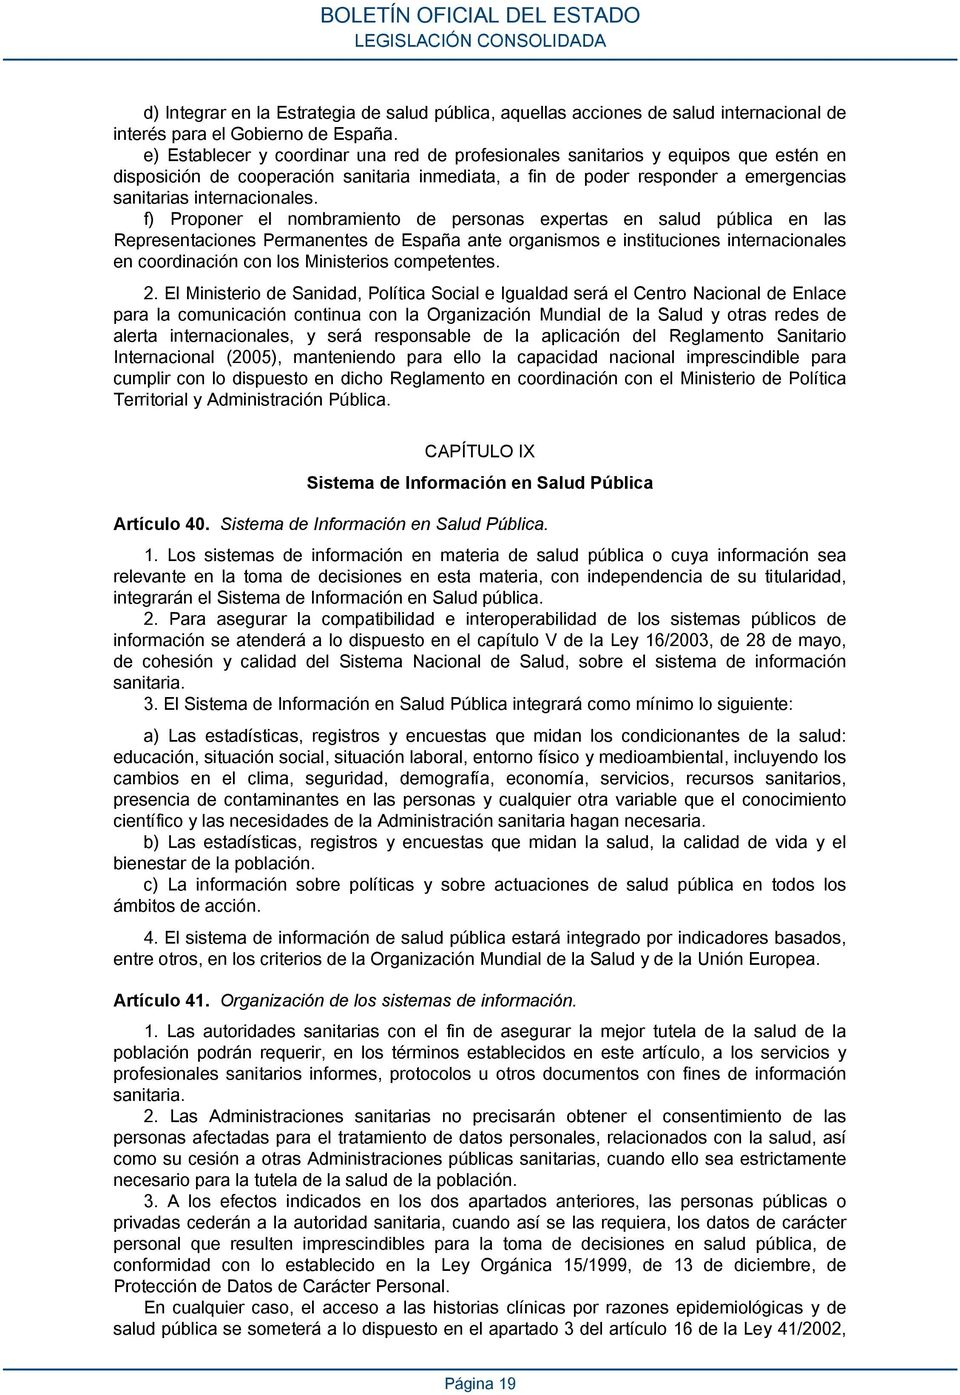 f) Proponer el nombramiento de personas expertas en salud pública en las Representaciones Permanentes de España ante organismos e instituciones internacionales en coordinación con los Ministerios